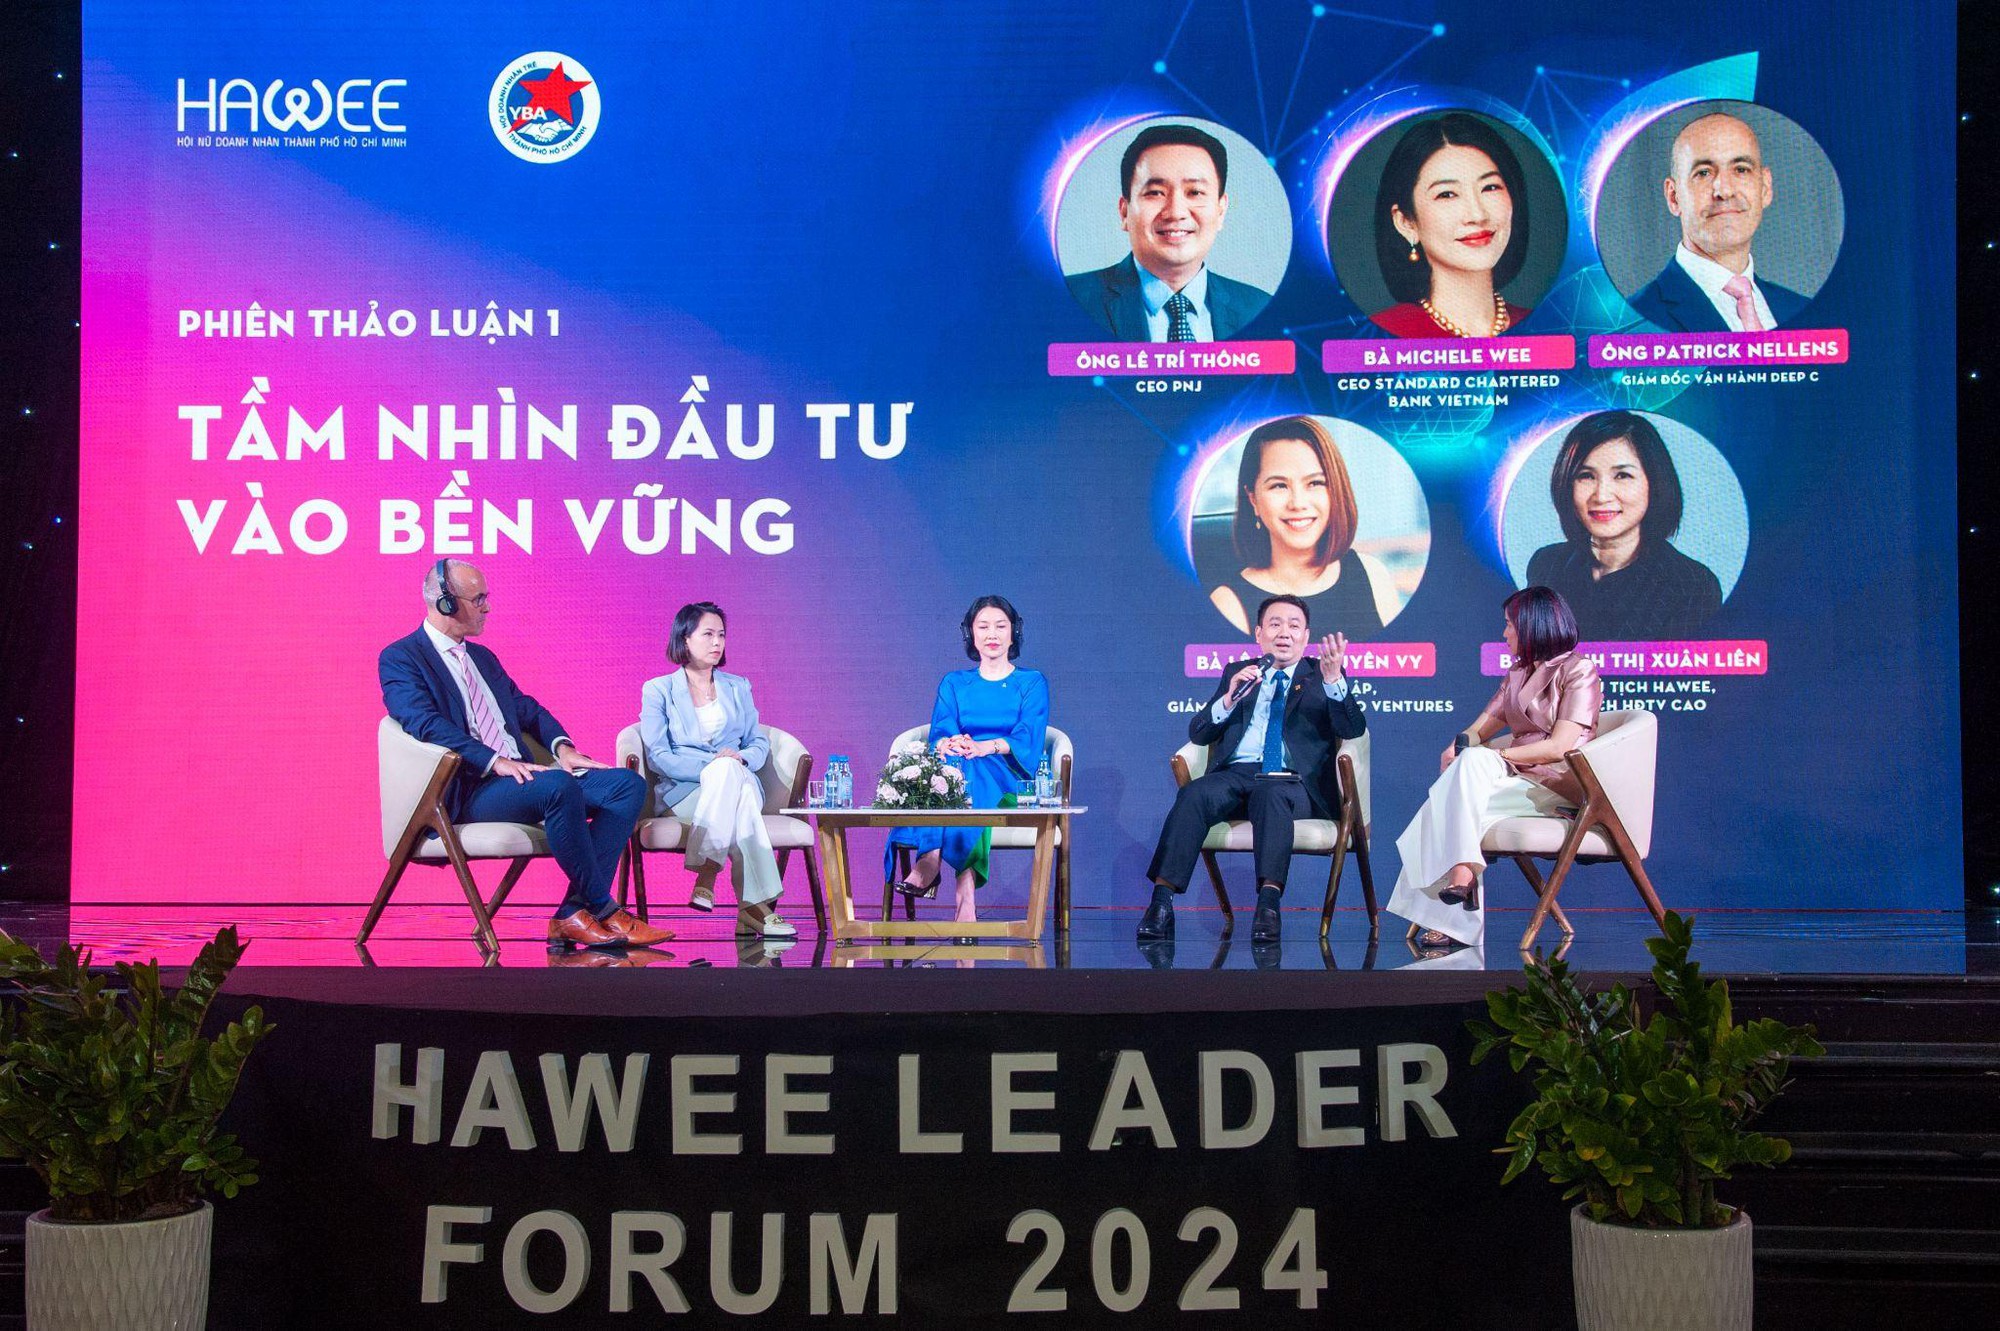 Hawee Leader’s Forum 2024: Doanh nghiệp Việt cần bắt kịp xu thế, chuyển hóa mô hình theo hướng bền vững- Ảnh 4.